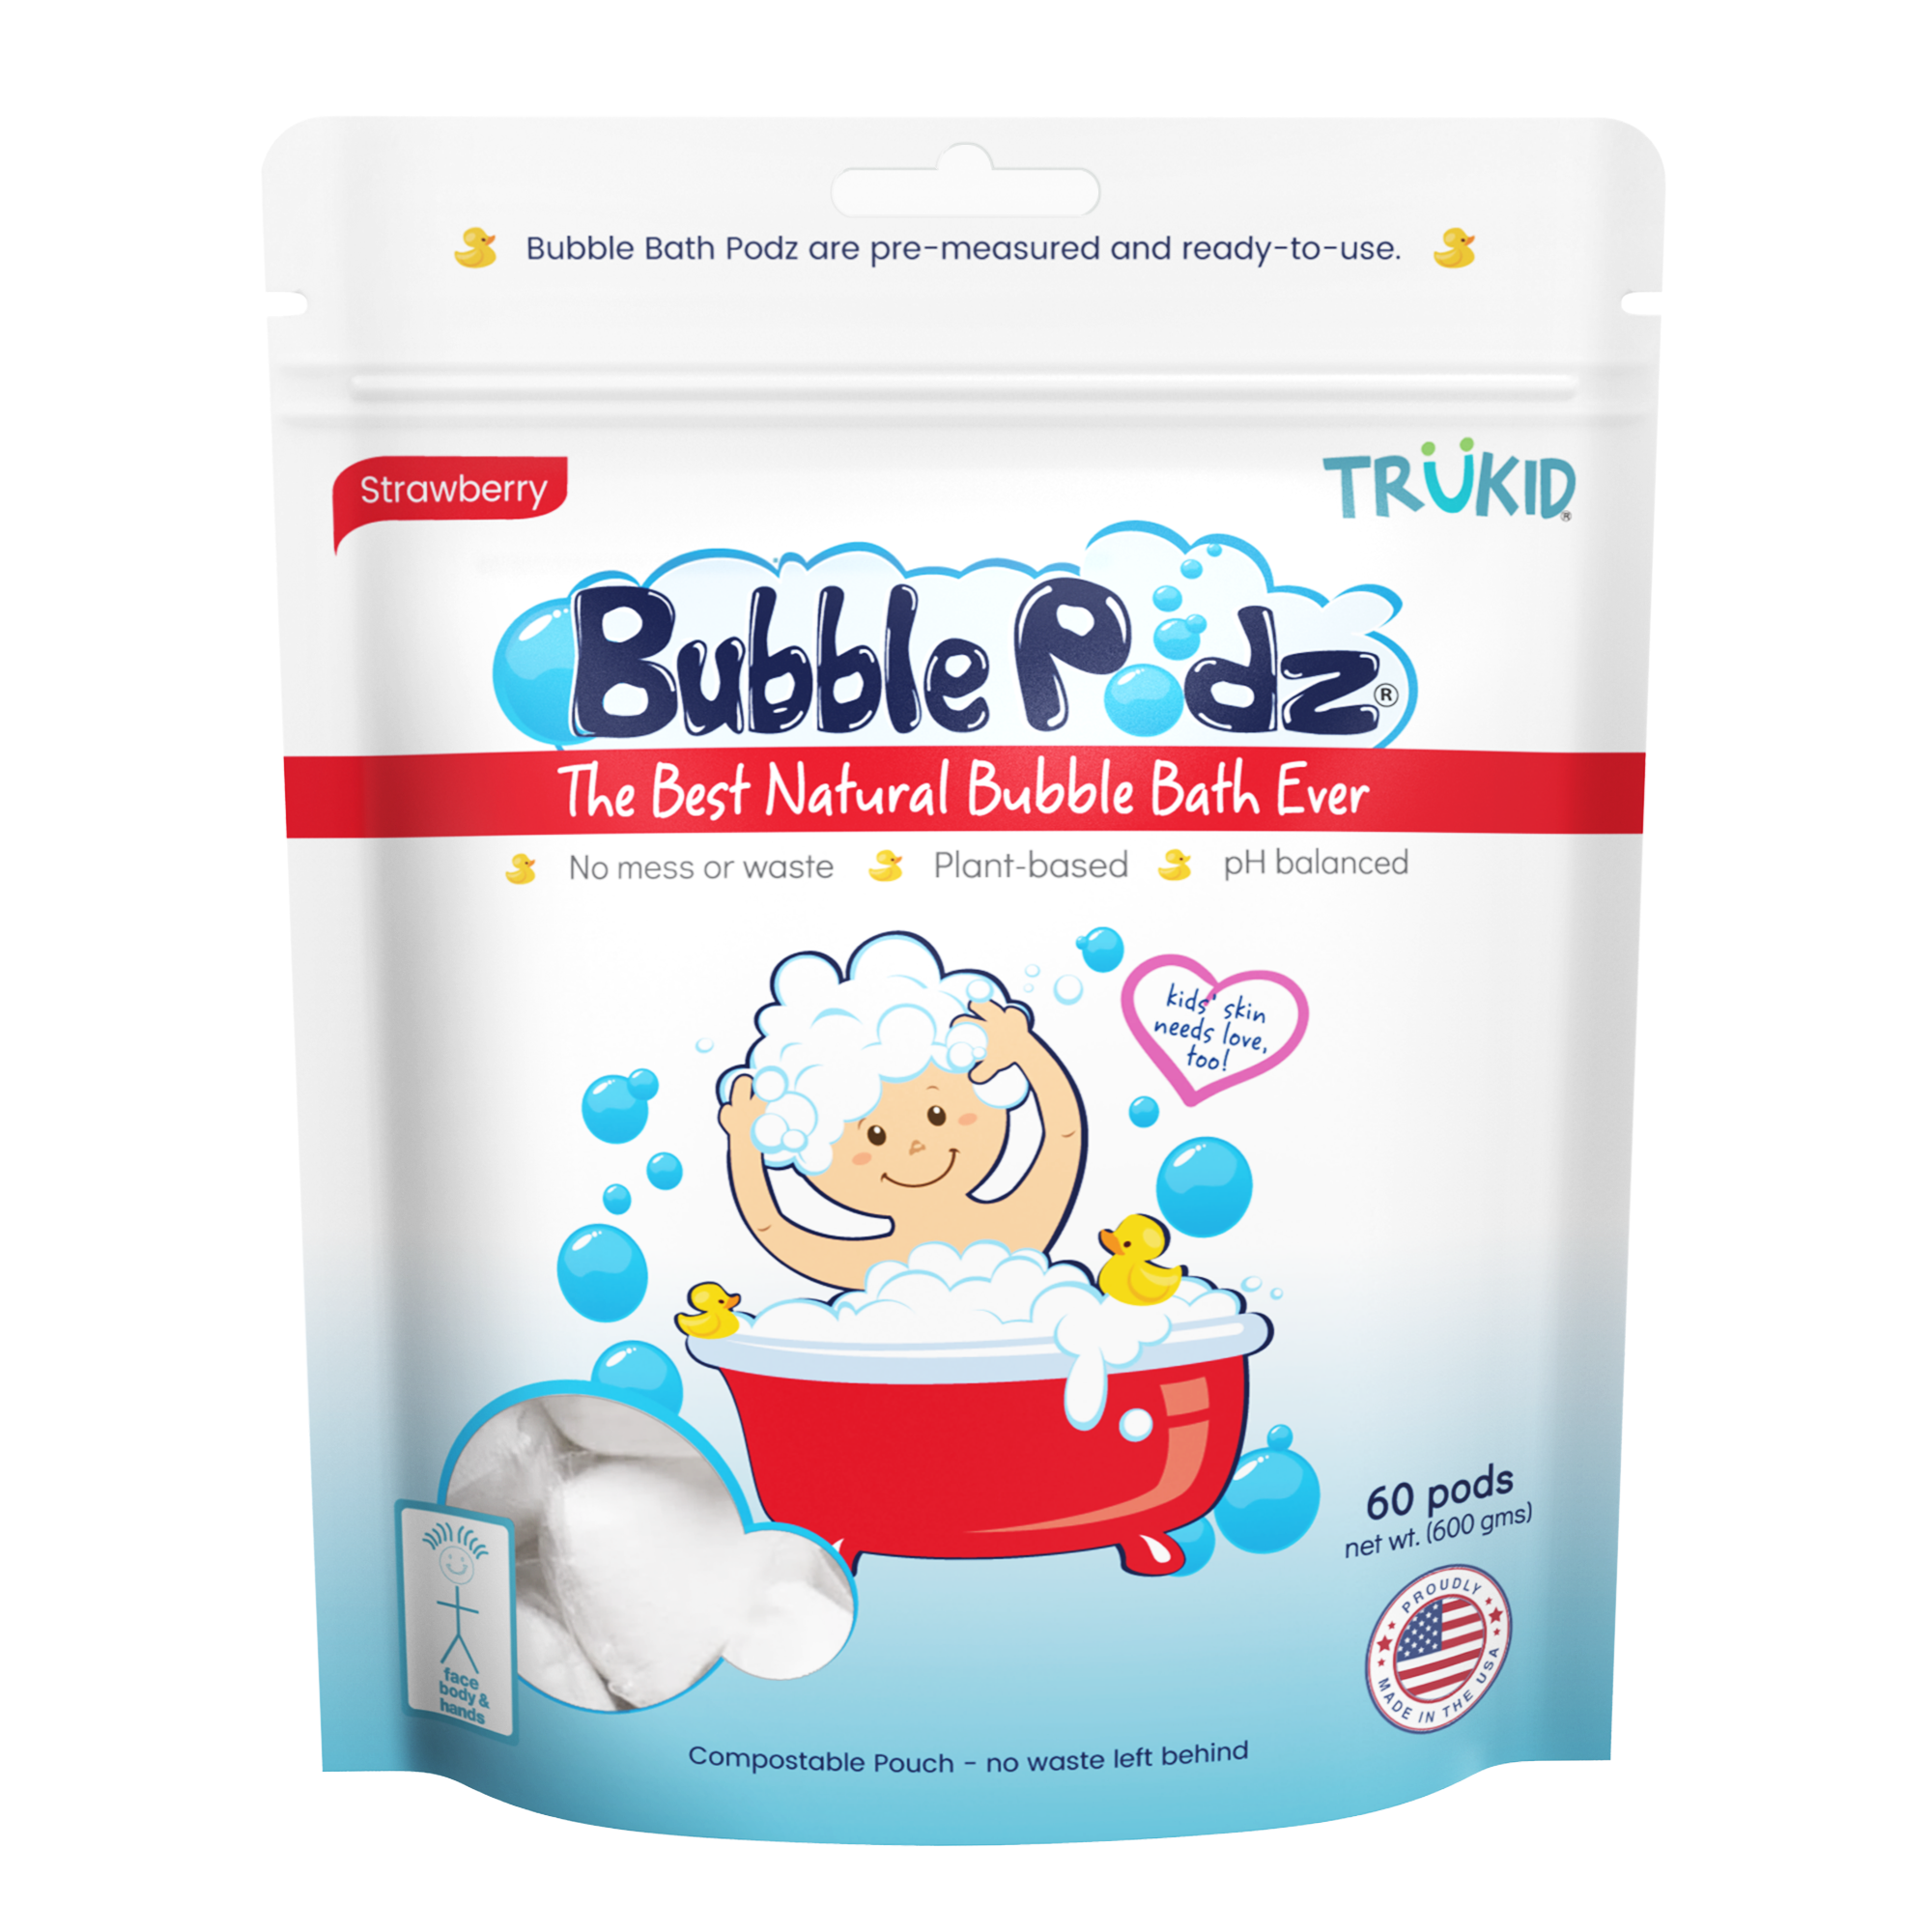 Bubble Podz: Strawberry Scented Bubble Bath